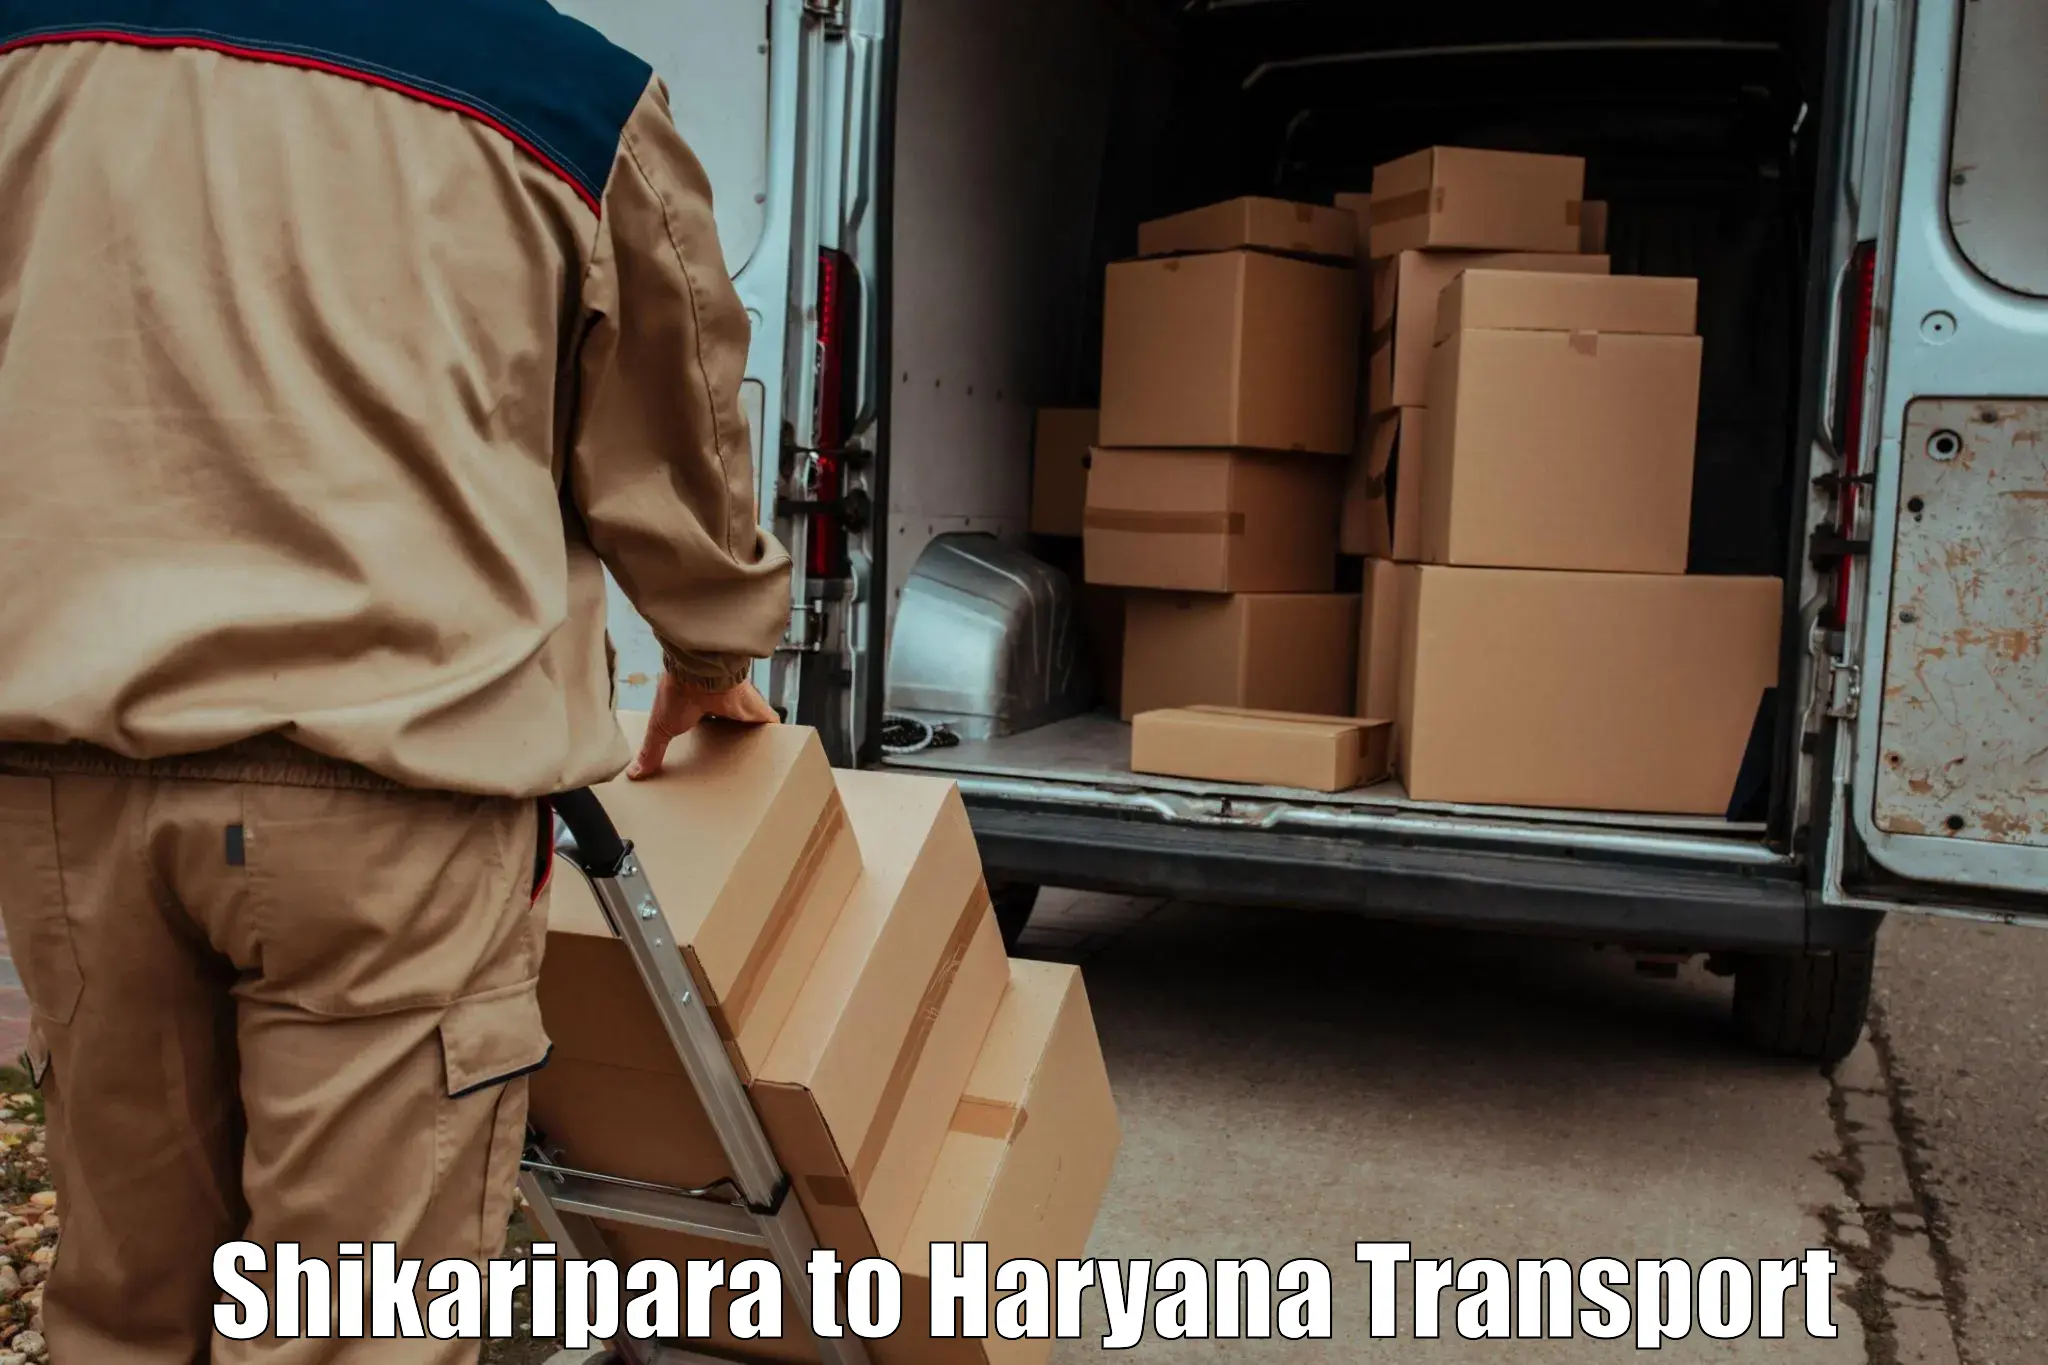 Pick up transport service Shikaripara to Charkhi Dadri